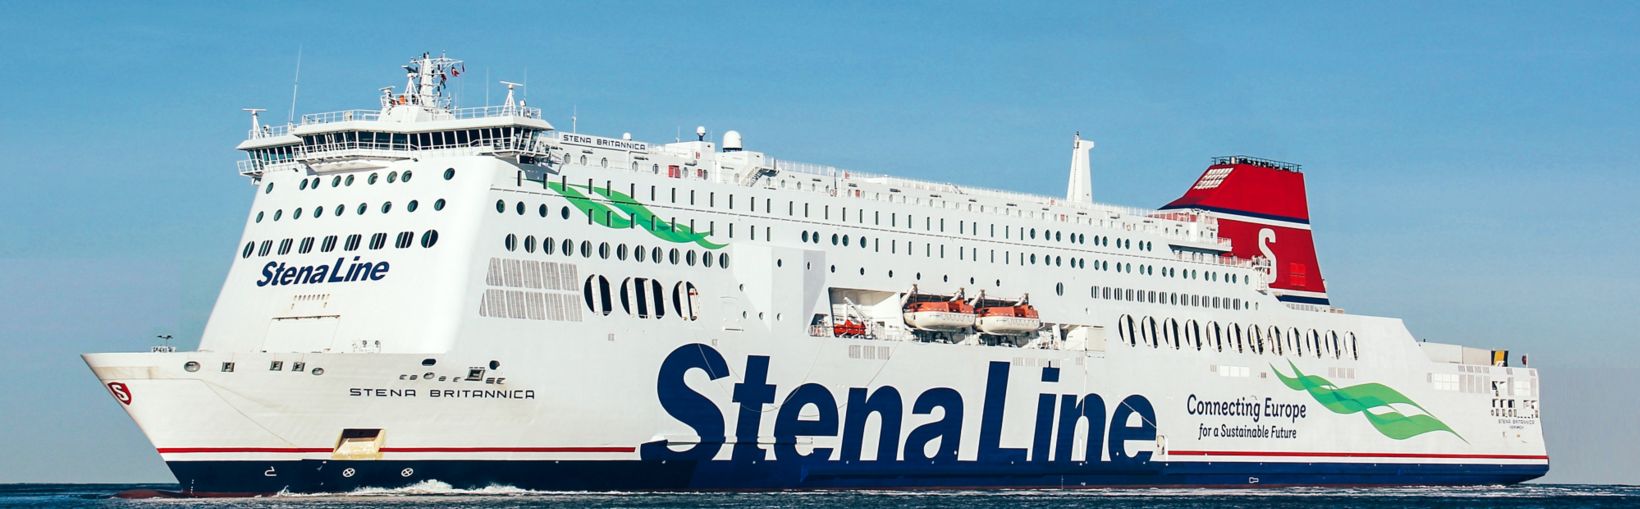 Færgen Stena Britannica til søs